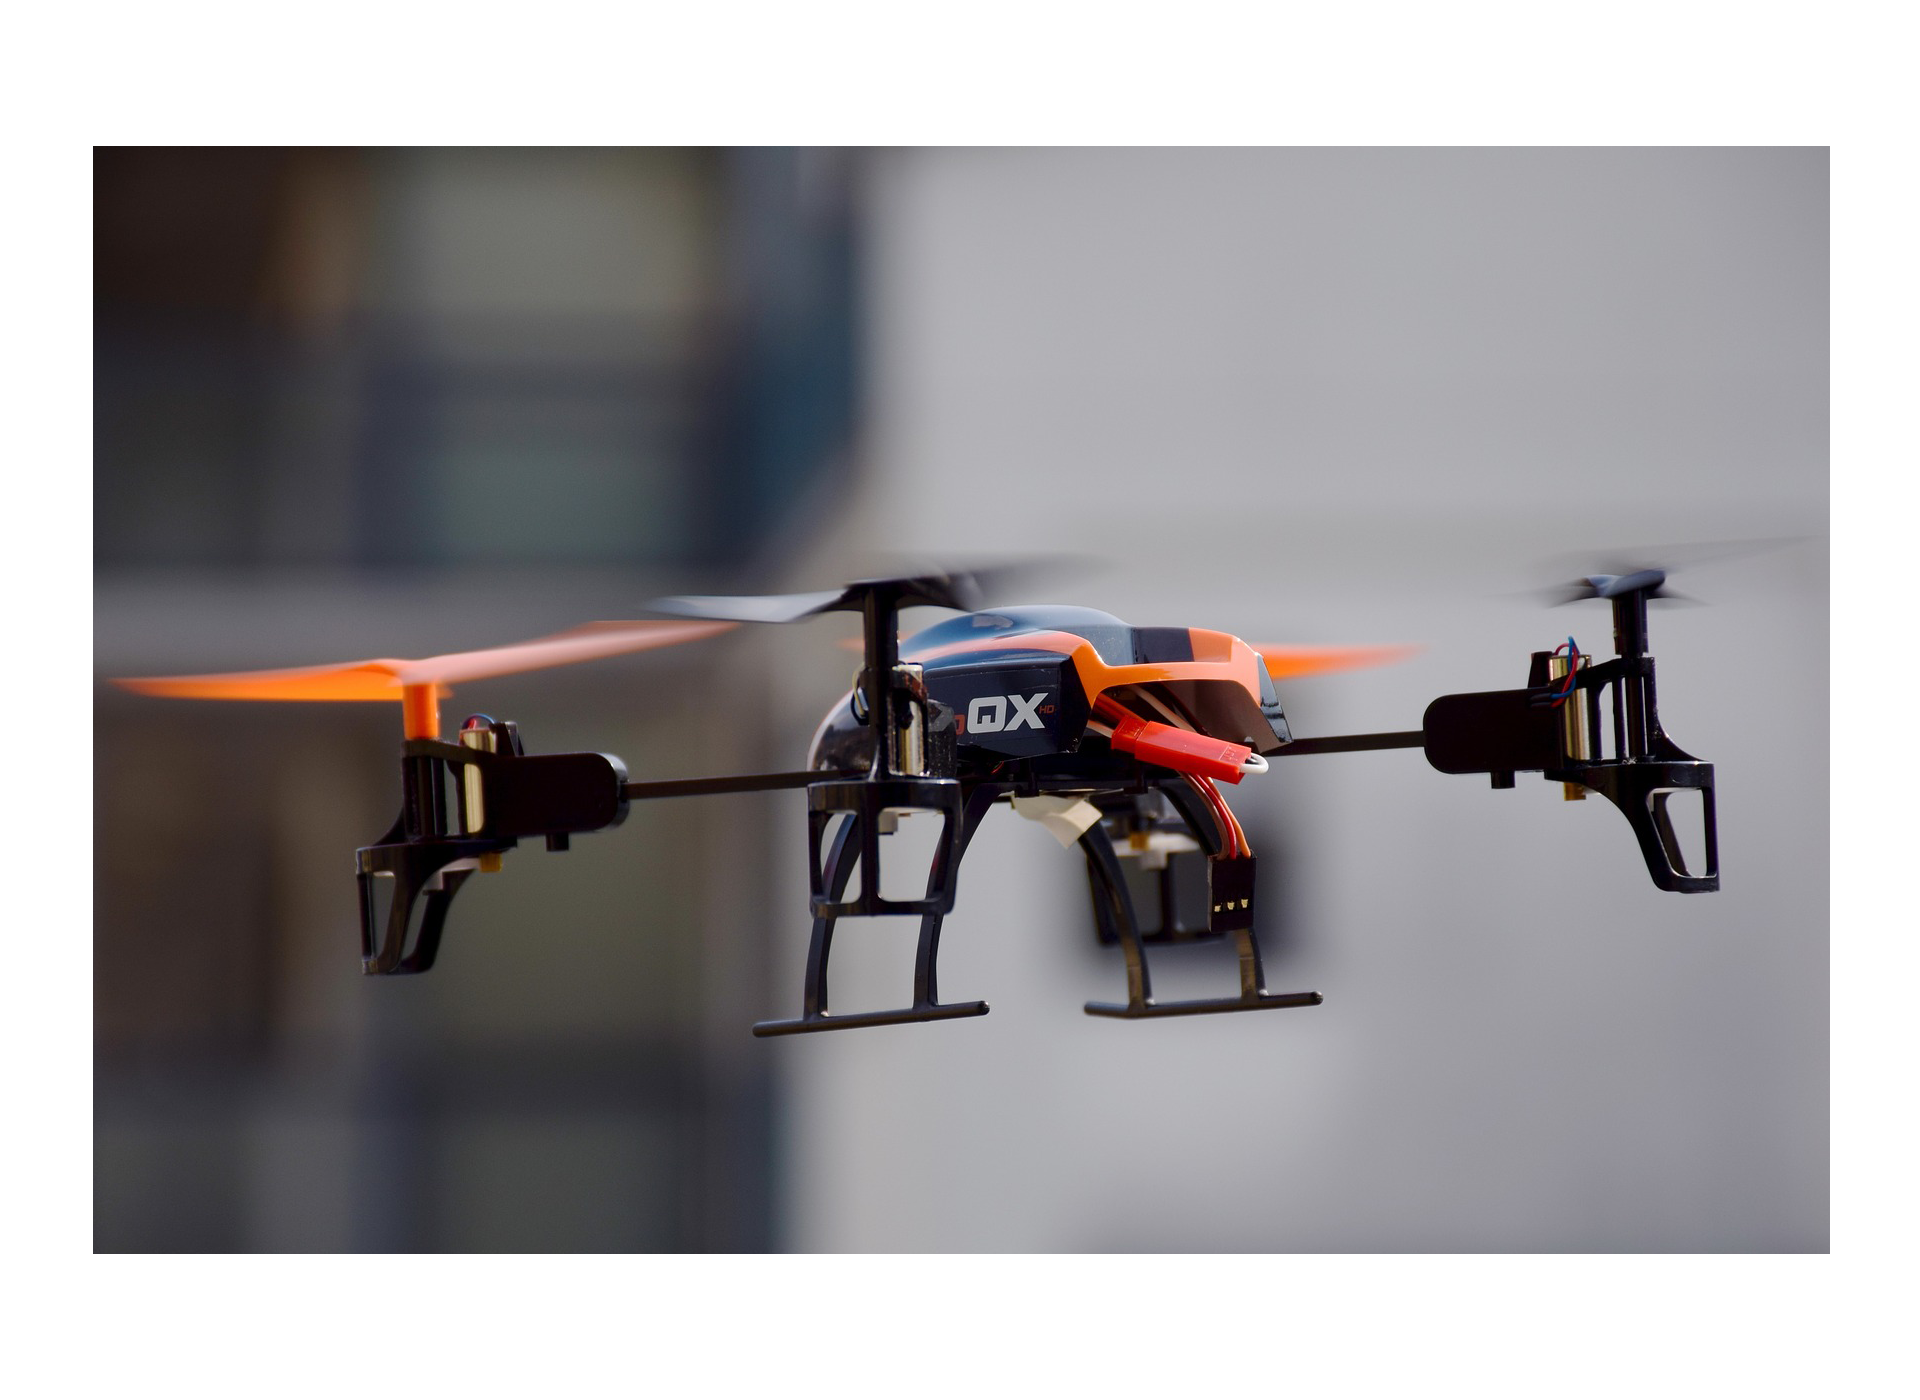 amazon trabaja con drones para el reparto de mercancias